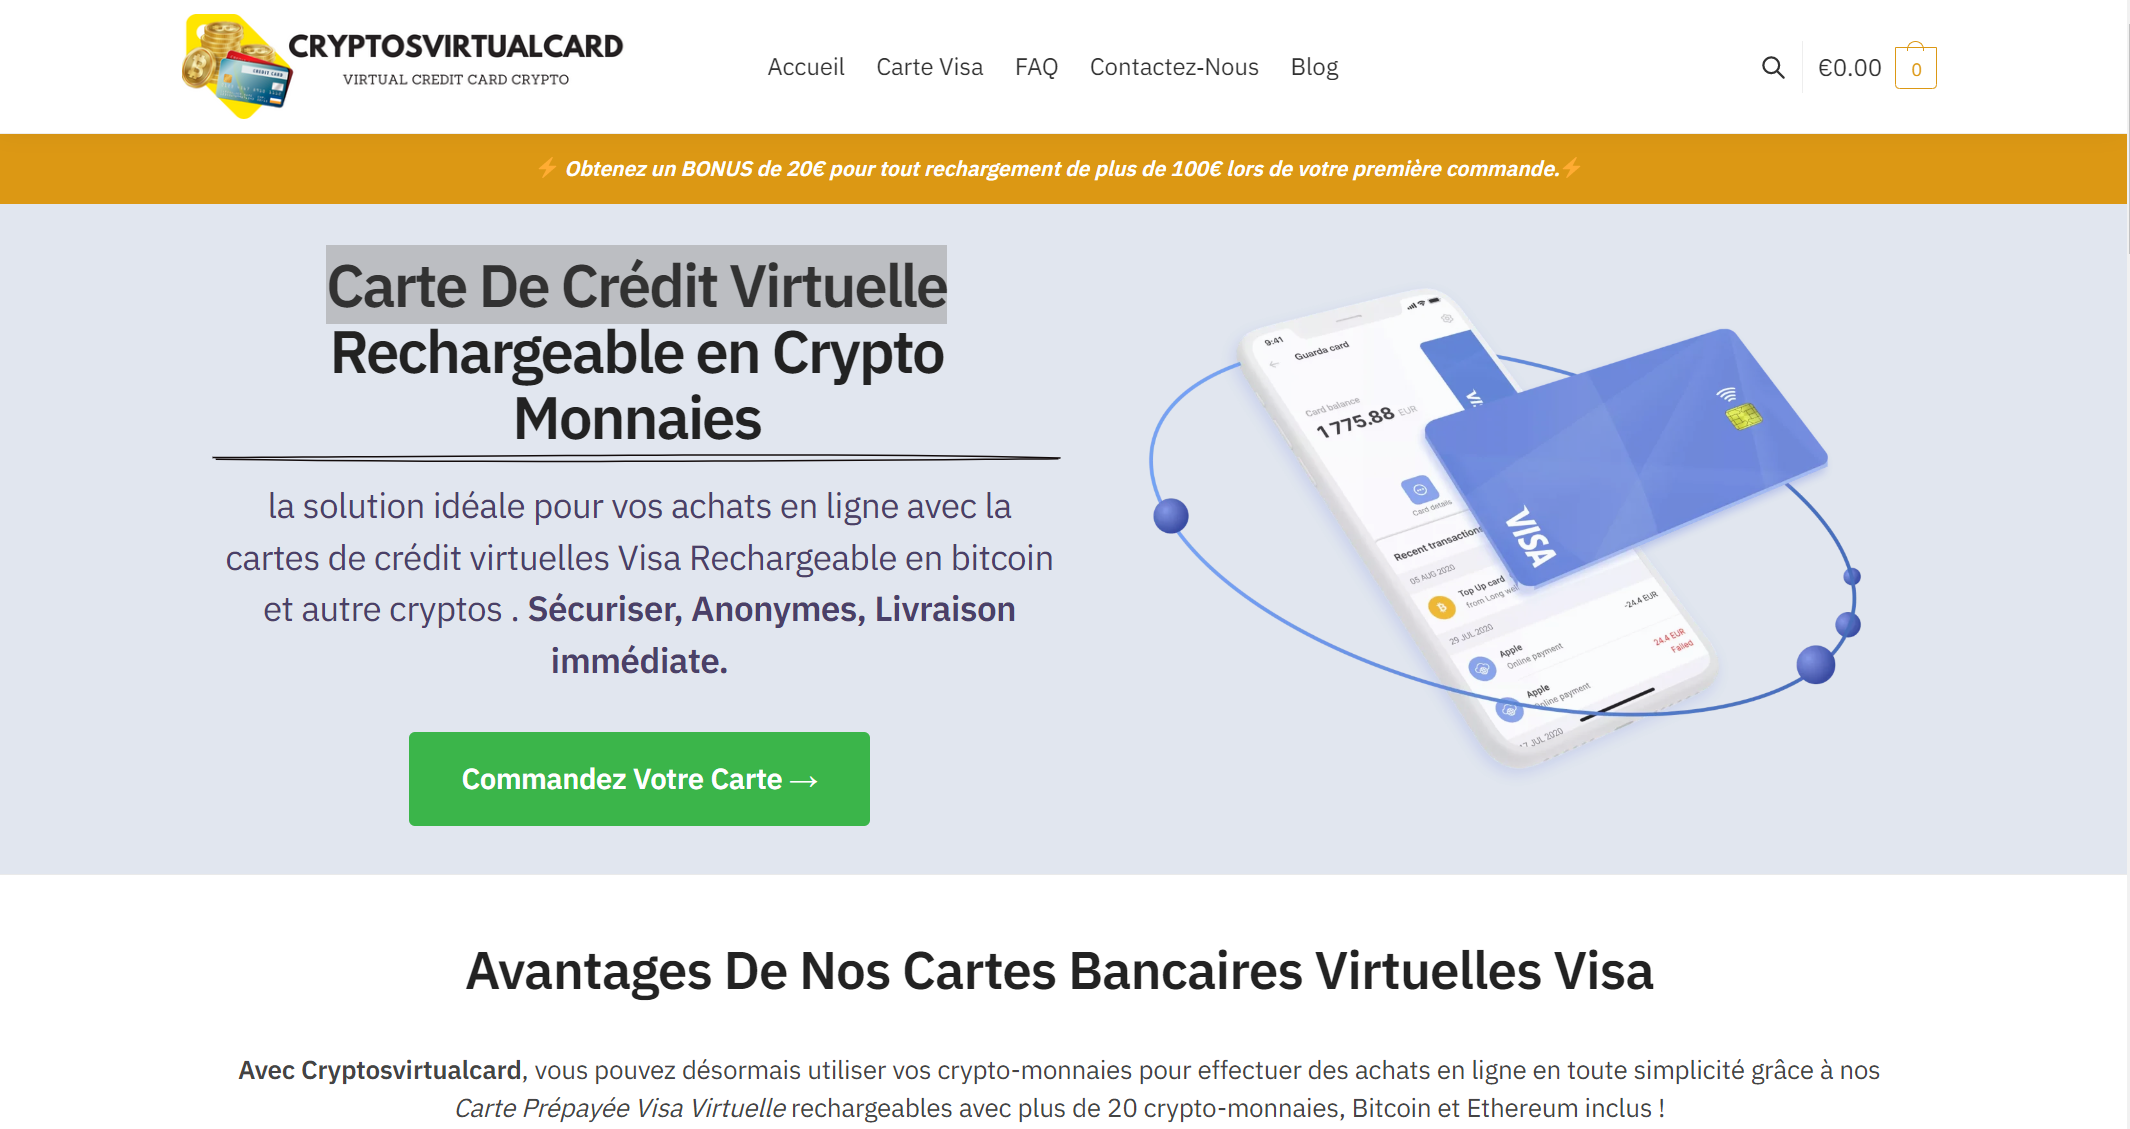 CryptosVirtualCard - Anbieter von virtuellen Kreditkarten, die mit Bitcoin aufladbar sind 6